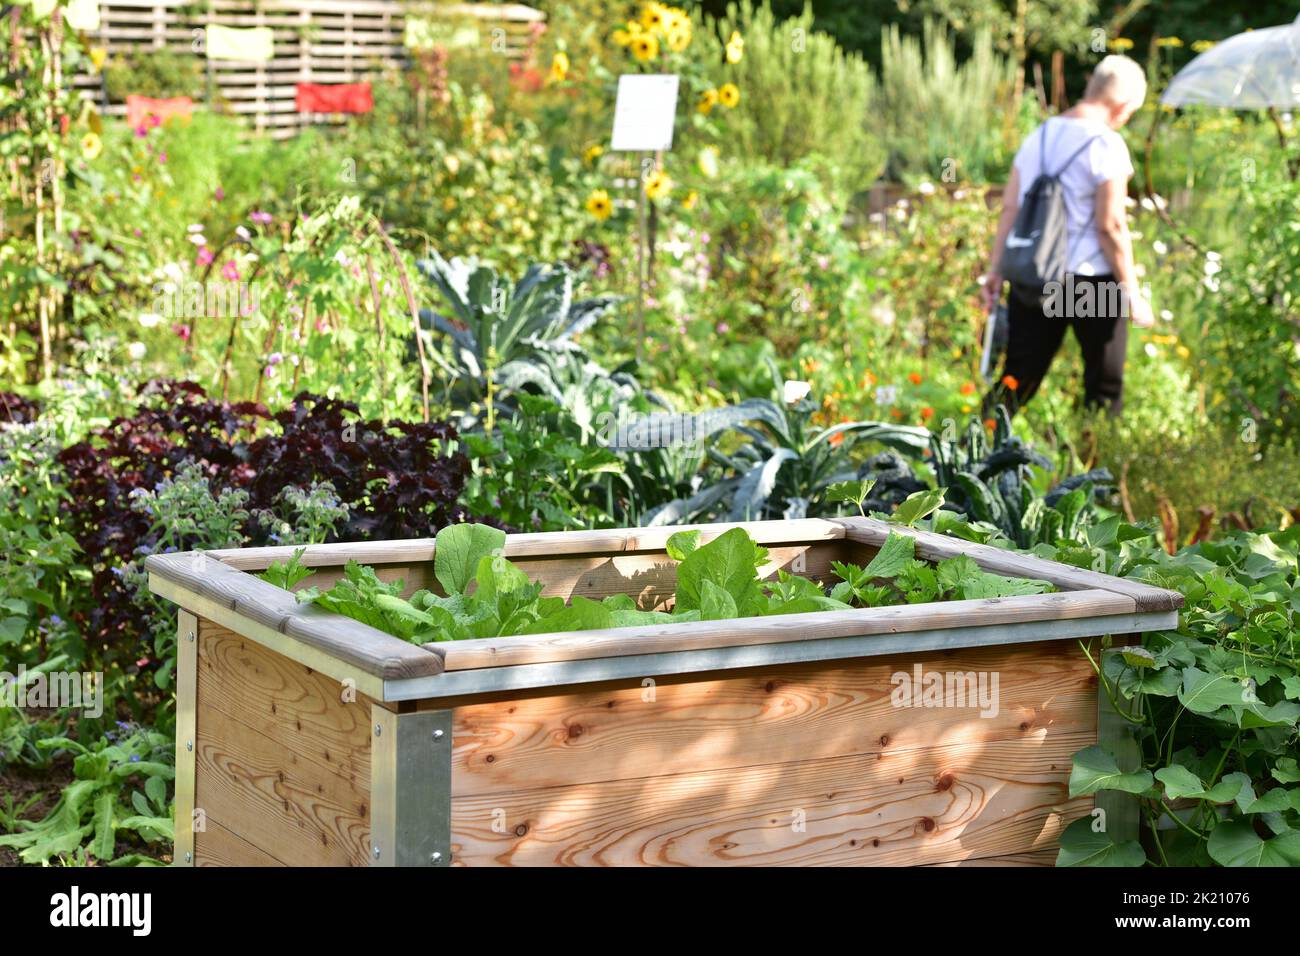 Un lecho elevado de lechuga y verduras en un jardín Foto de stock